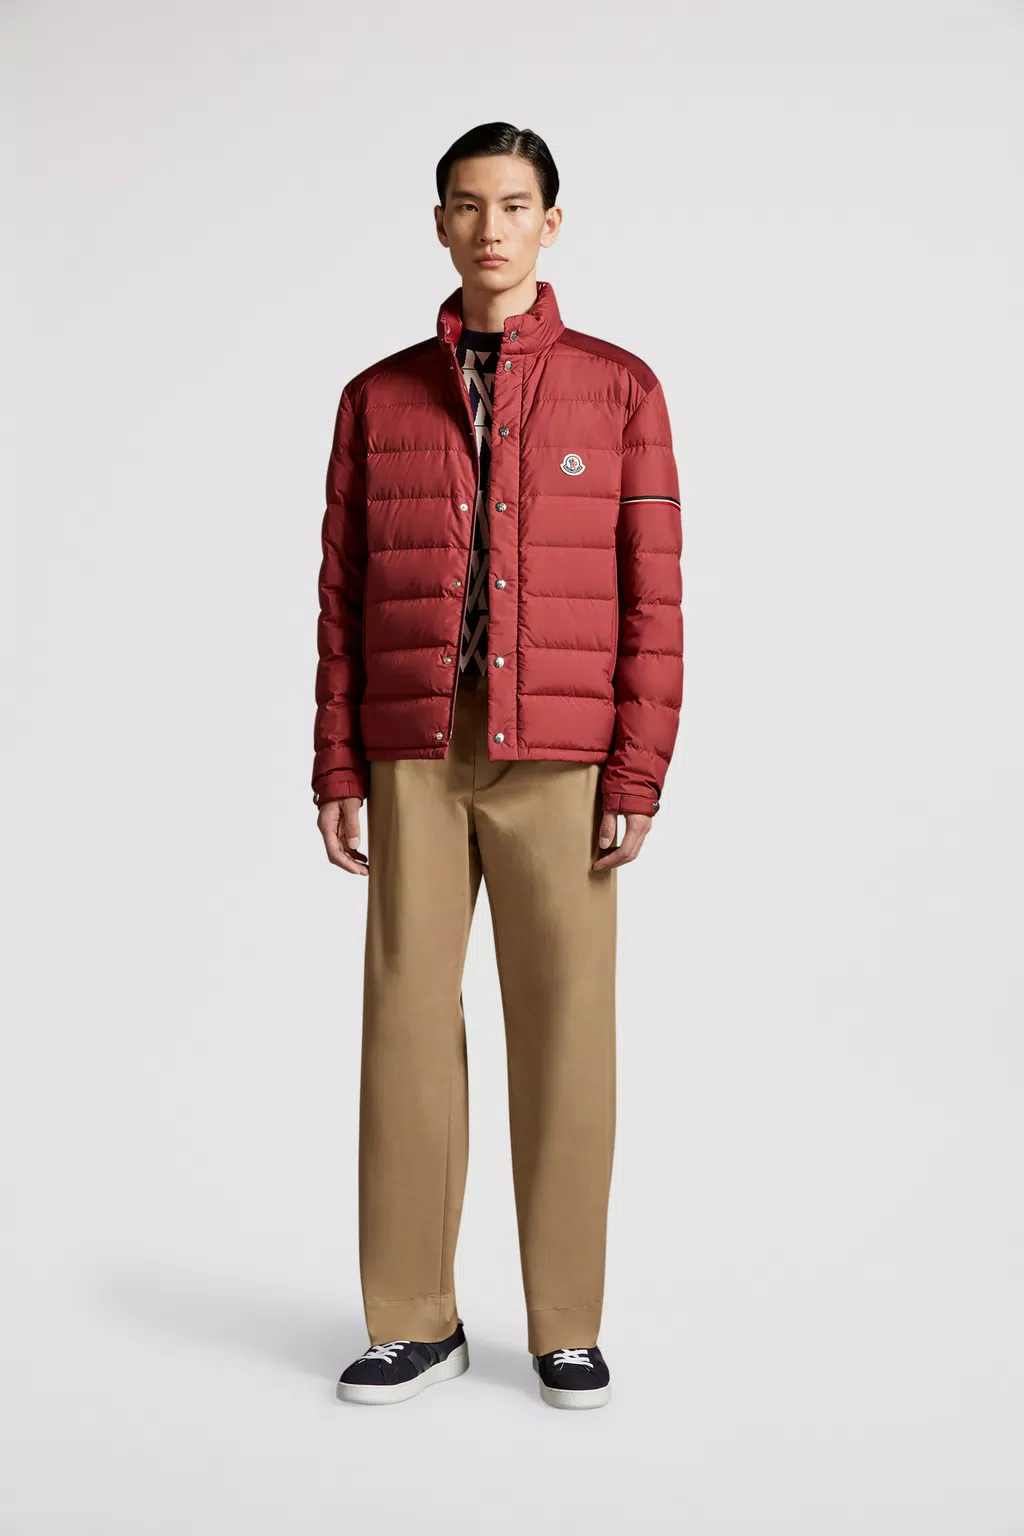 Men's Outerwear - Down Jackets, Coats, Parkas & Vests